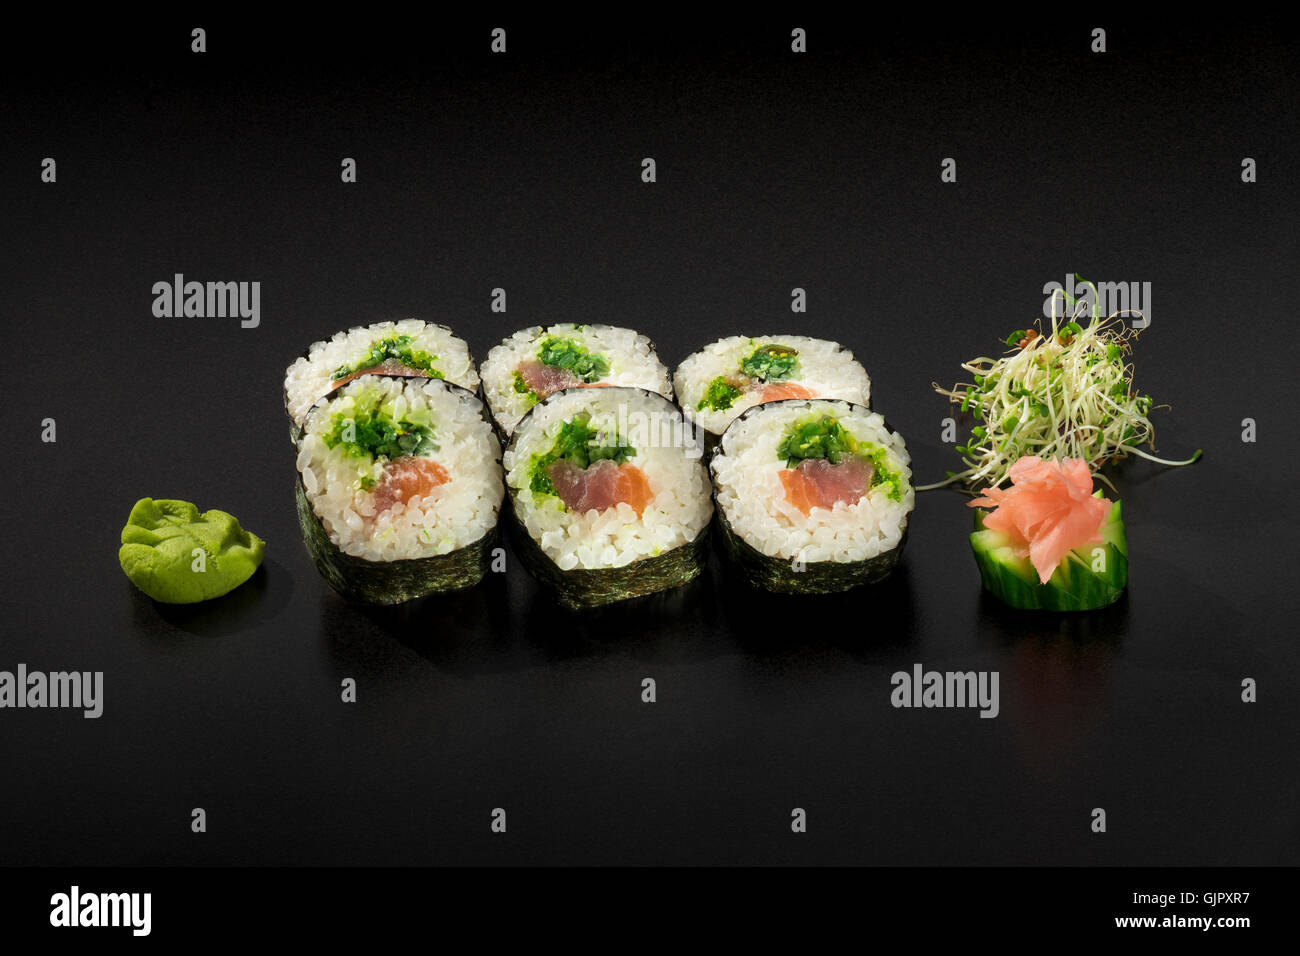 Rouleaux de sushi frais hosomaki décoré de salade d'algues et wasabi Banque D'Images